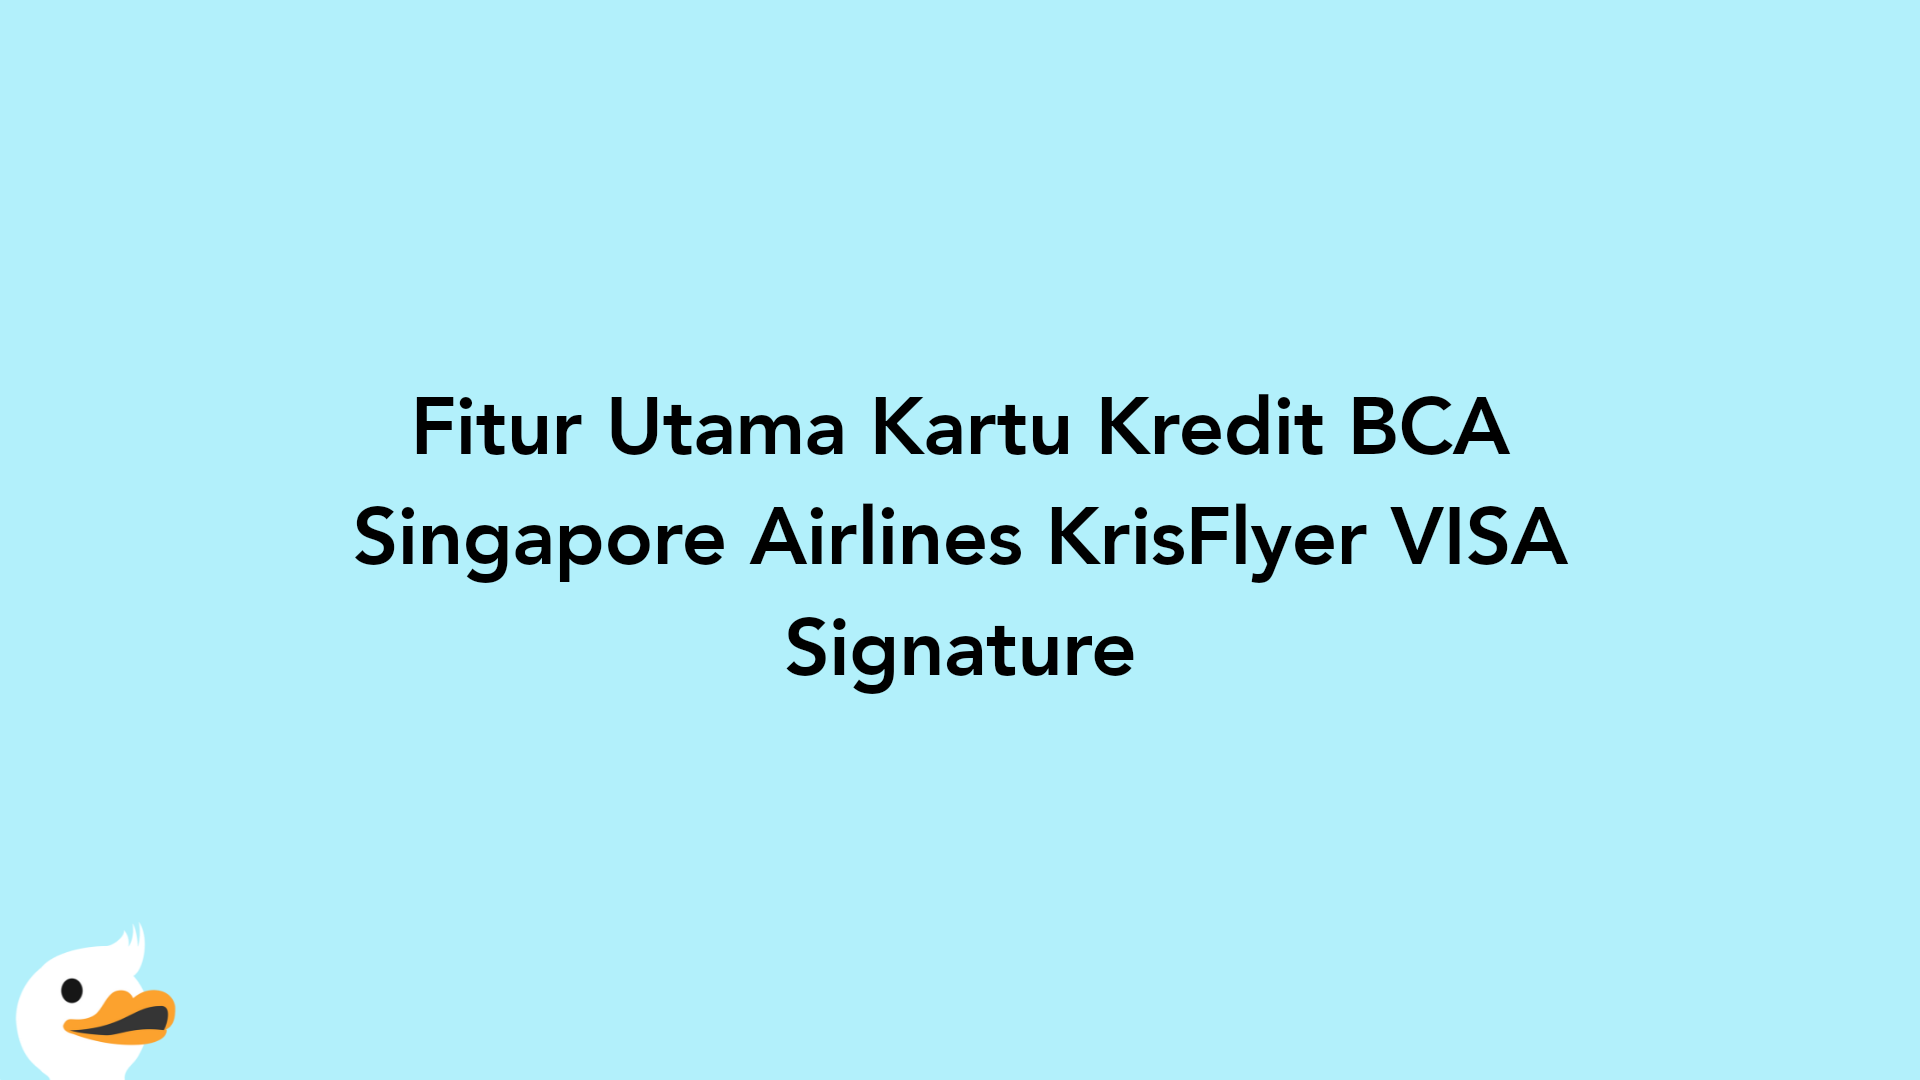 Fitur Utama Kartu Kredit BCA Singapore Airlines KrisFlyer VISA Signature